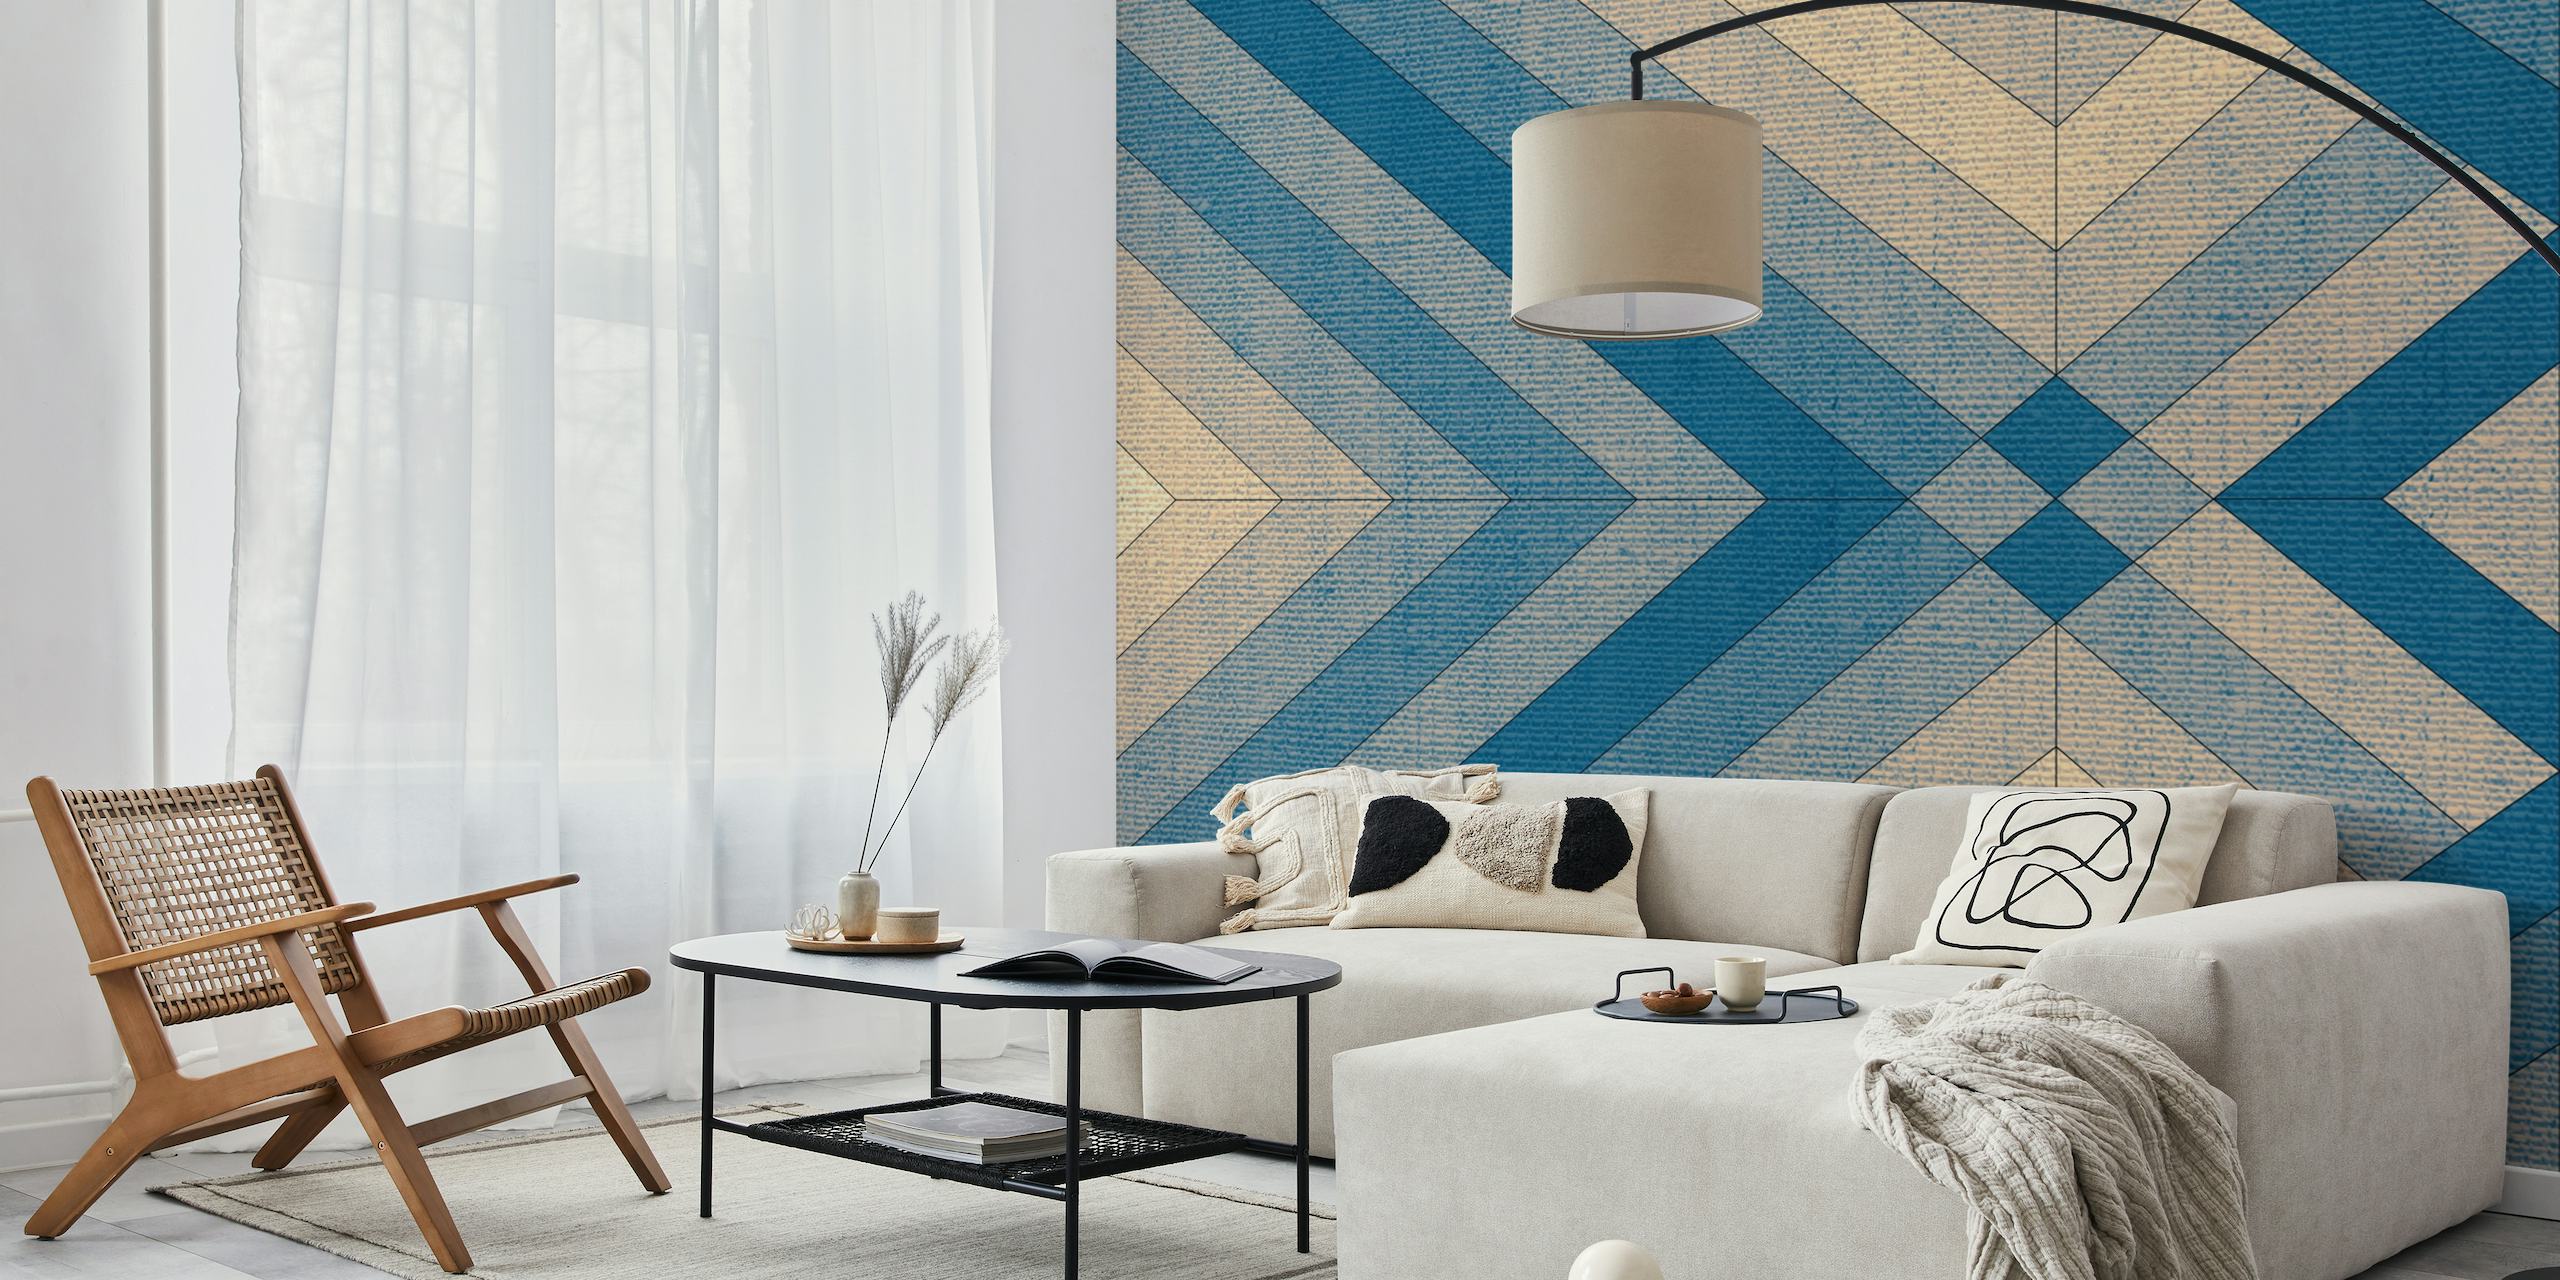 Vægmaleri med geometrisk mønster med en tekstillignende tekstur i blå og beige nuancer